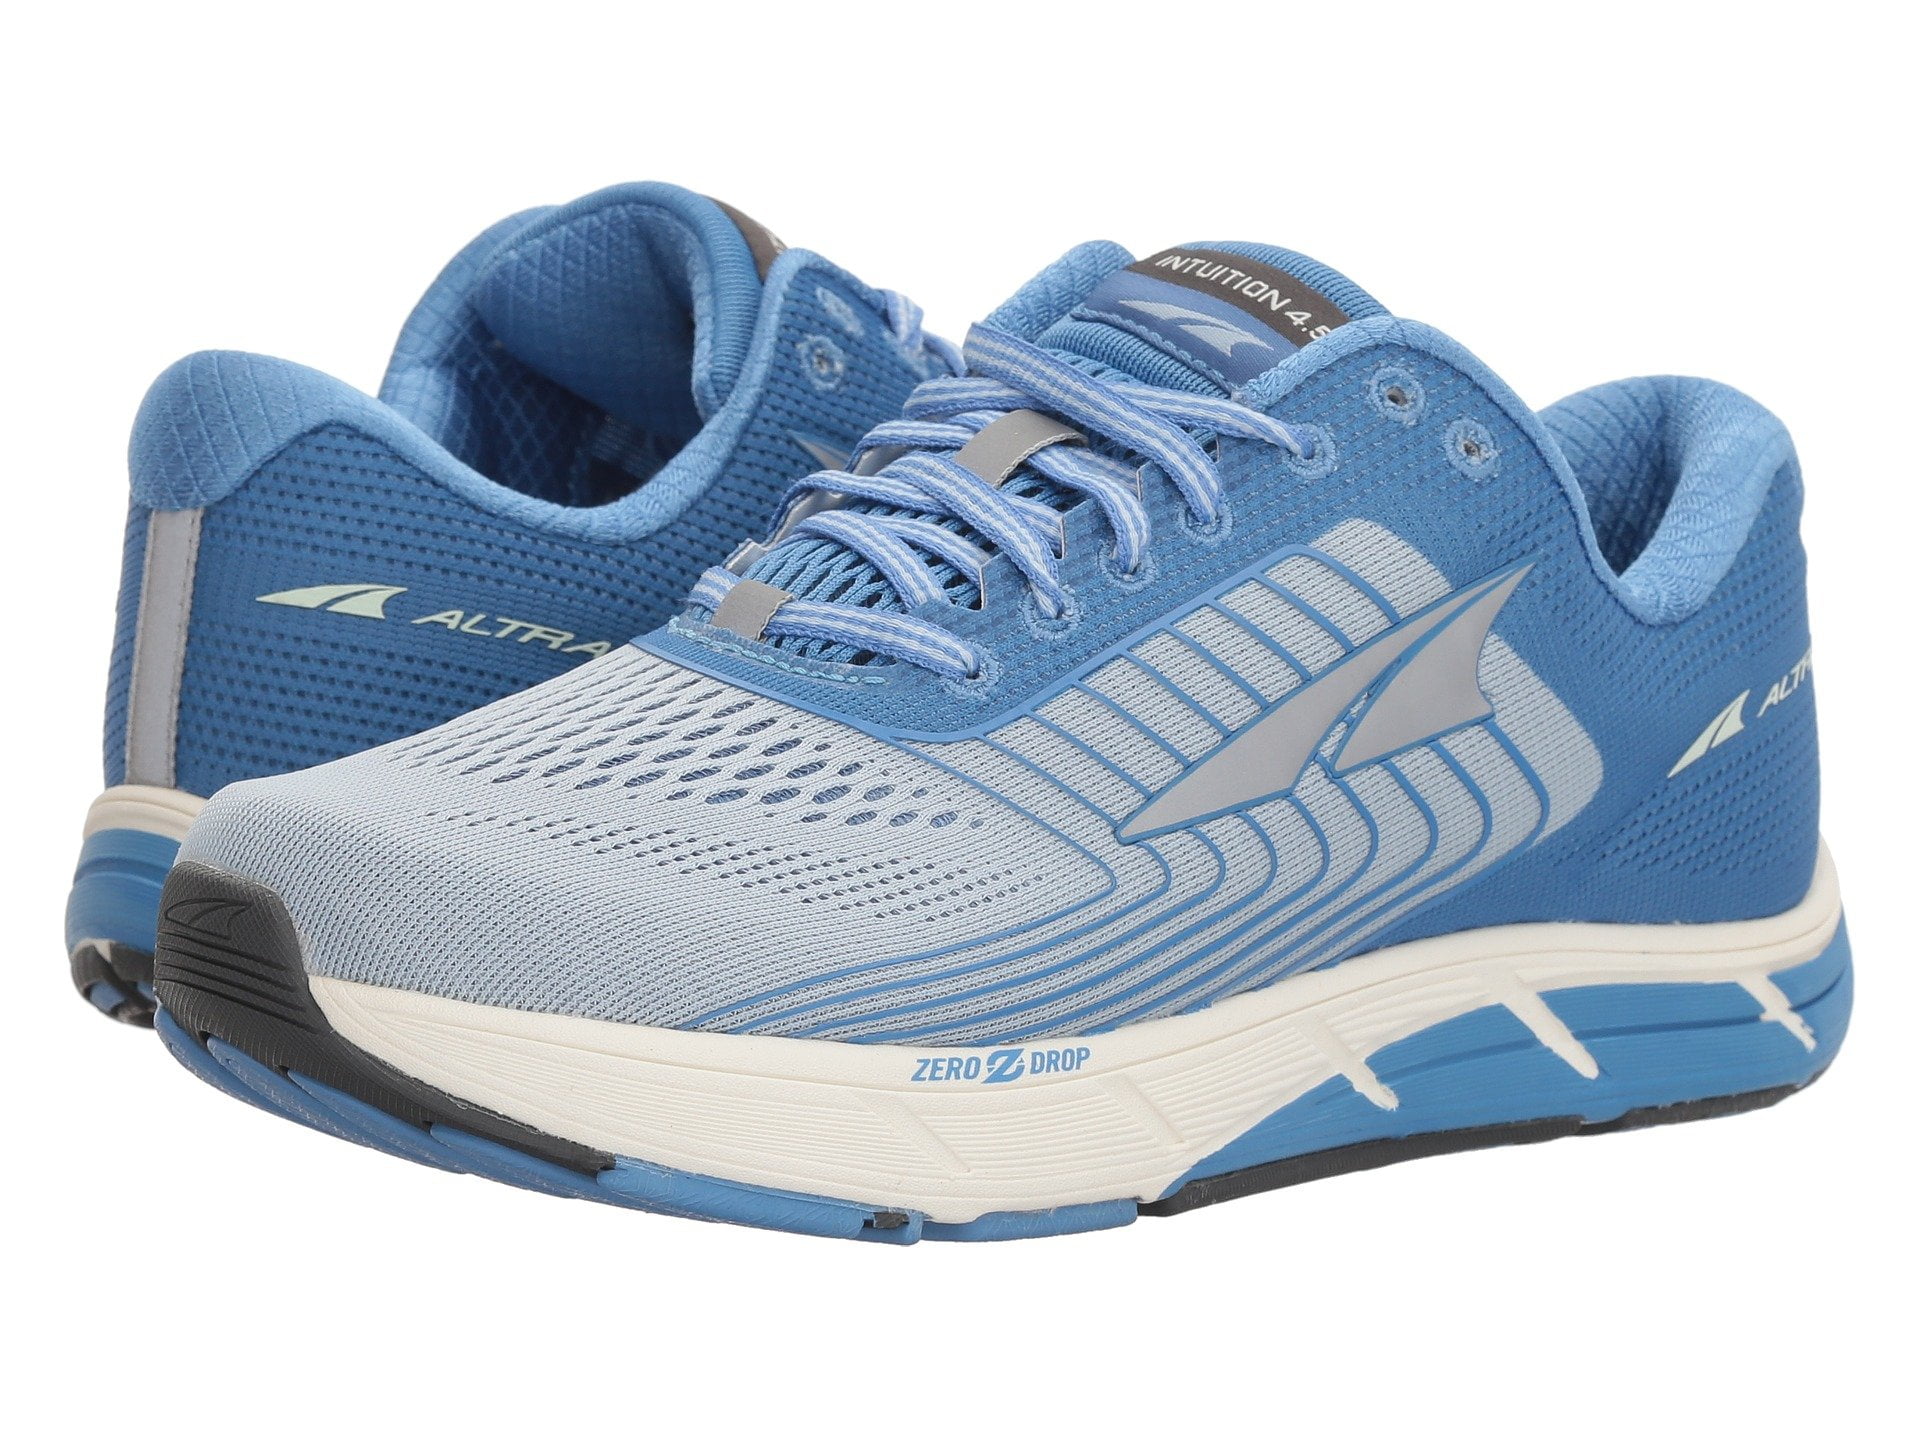 Altra Women's Intuition 4.5 Zero Drop Comfort Running Shoes Light Blue ...